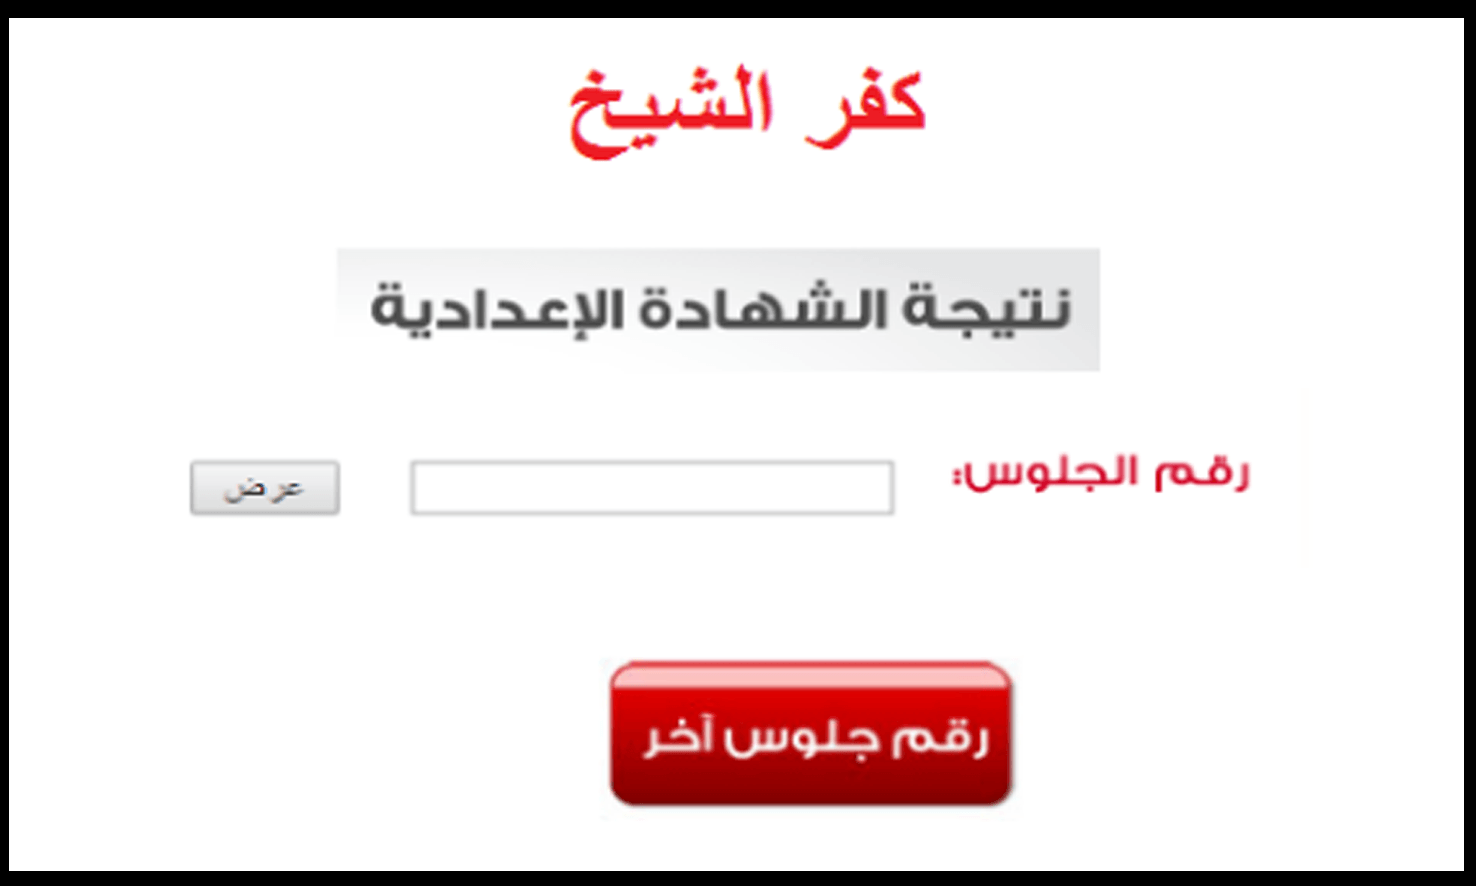 ظهرت الآن نتيجة الشهادة الإعدادية 2020 محافظة كفر الشيخ..نتيجة الصف الثالث الإعدادي